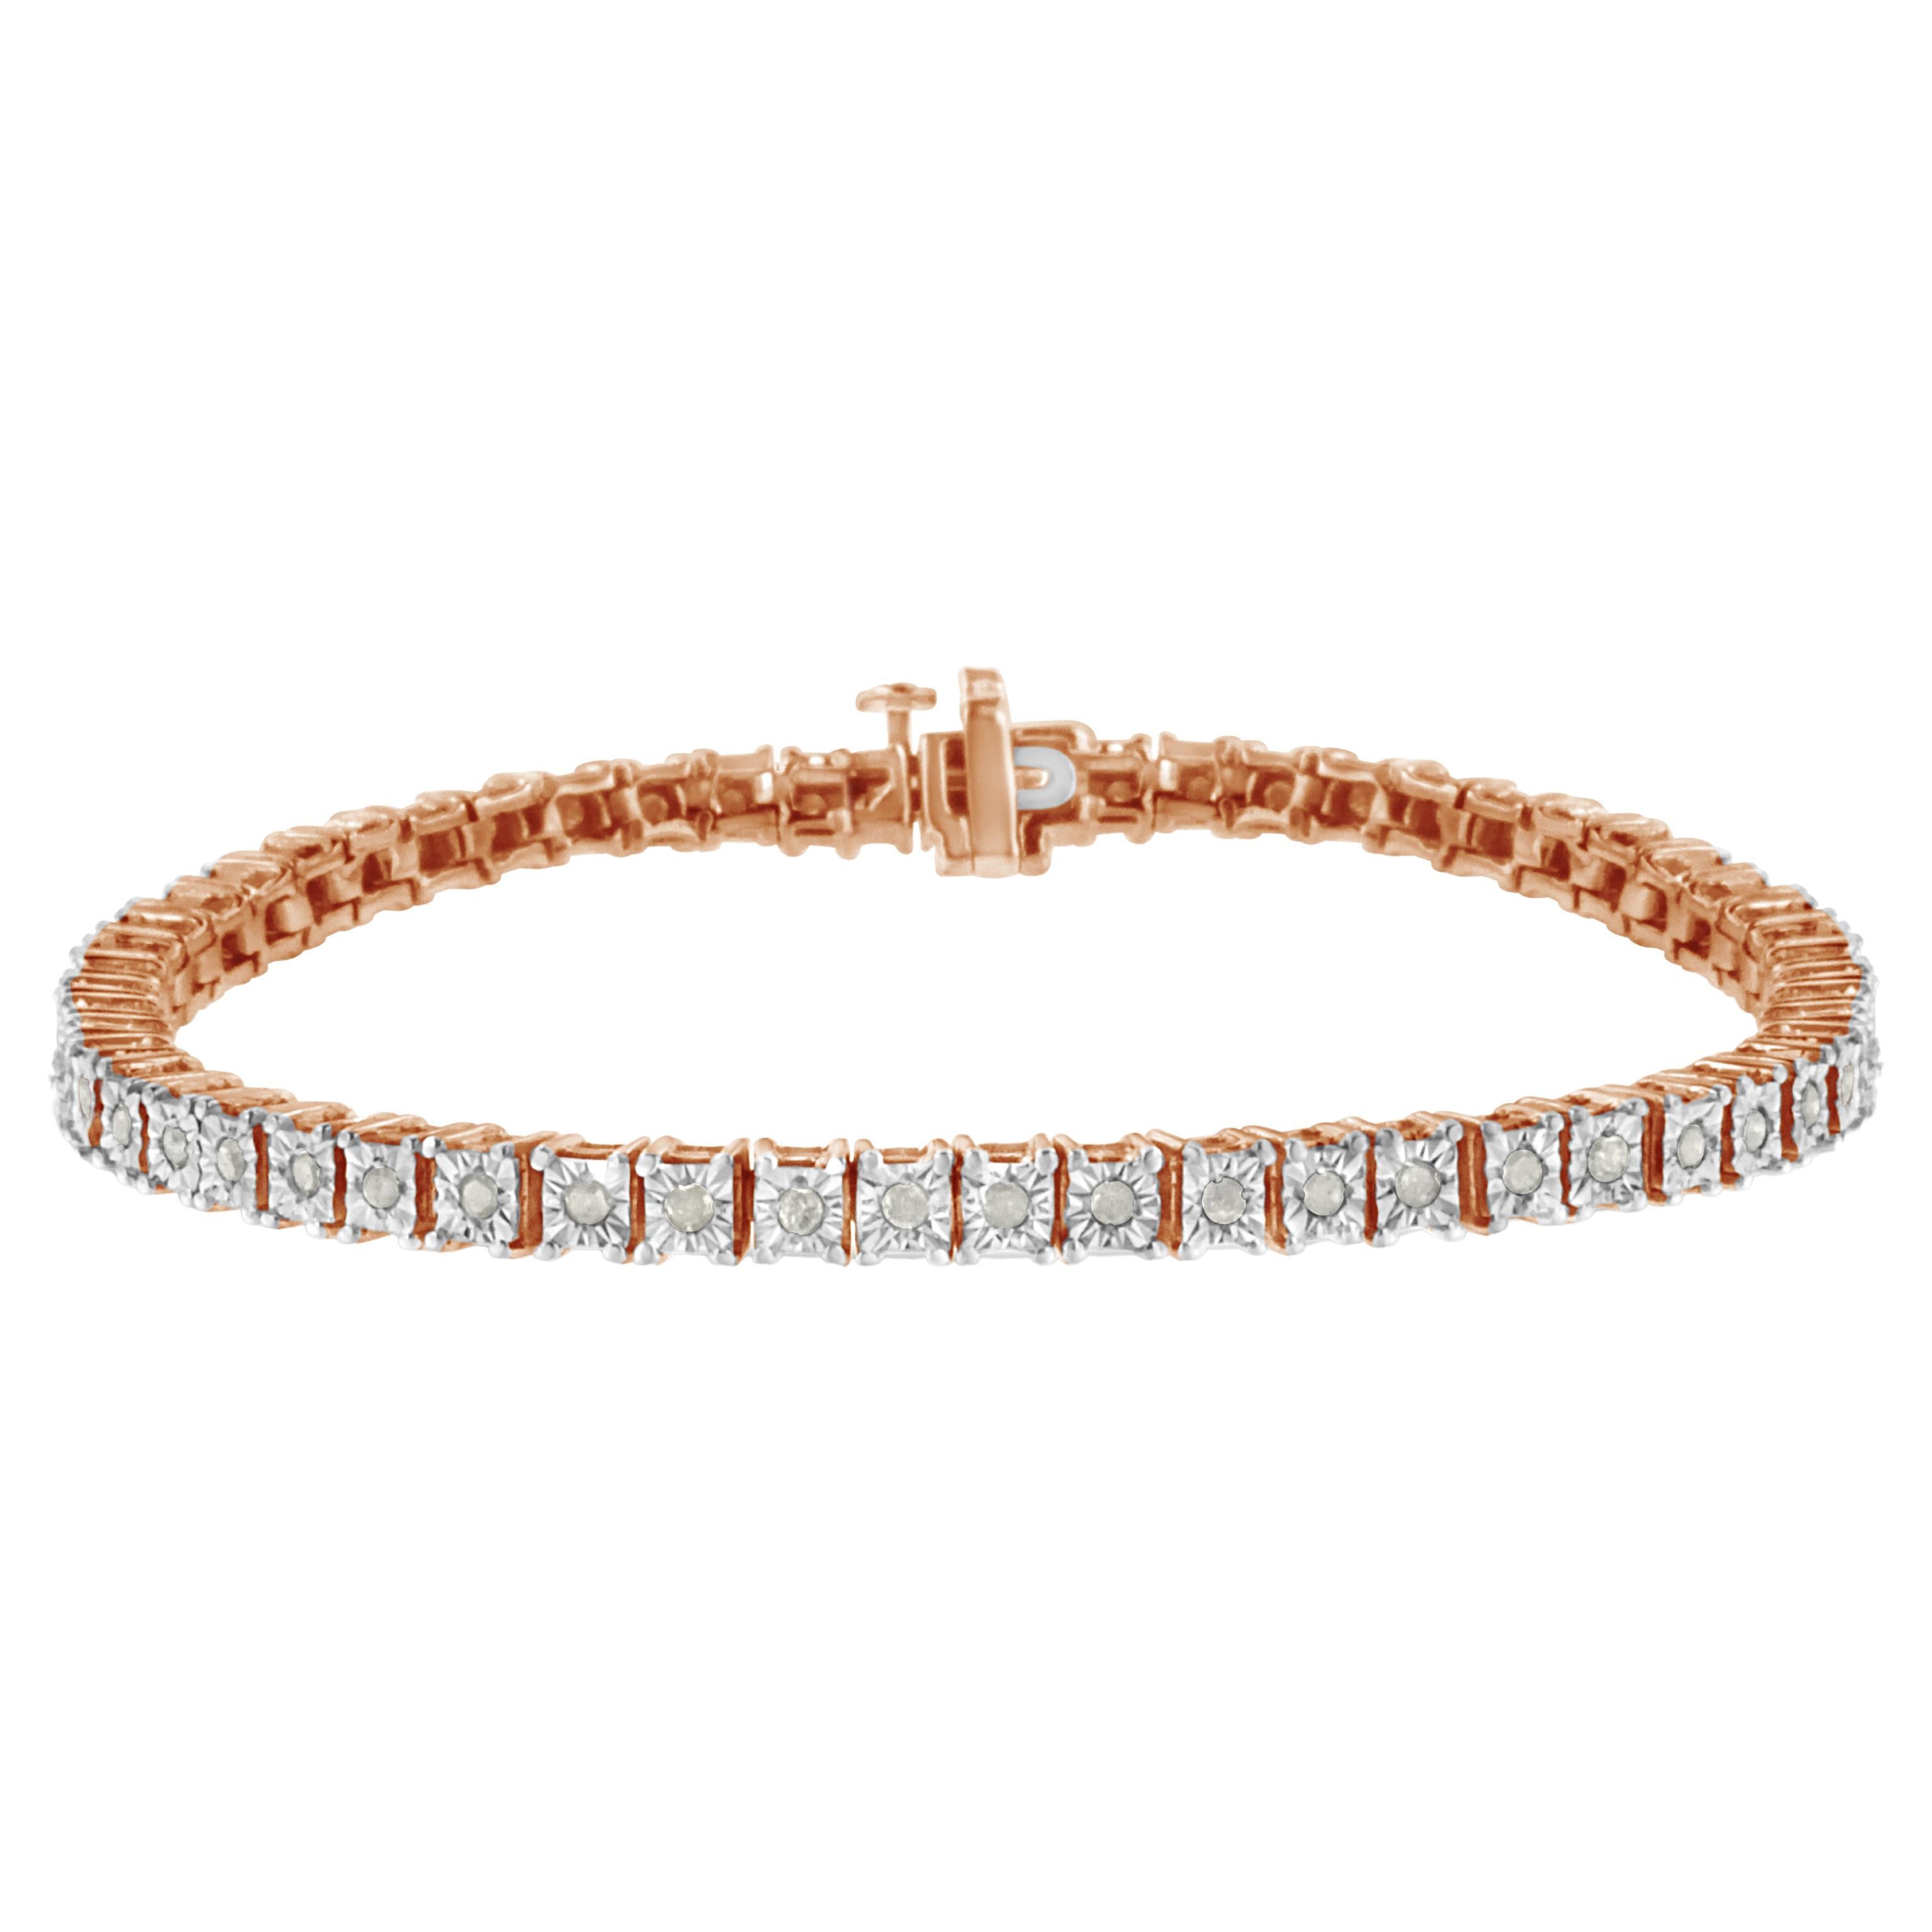 Bracelet tennis à monture carrée sertie de diamants 1,0 carat en or rose sur argent